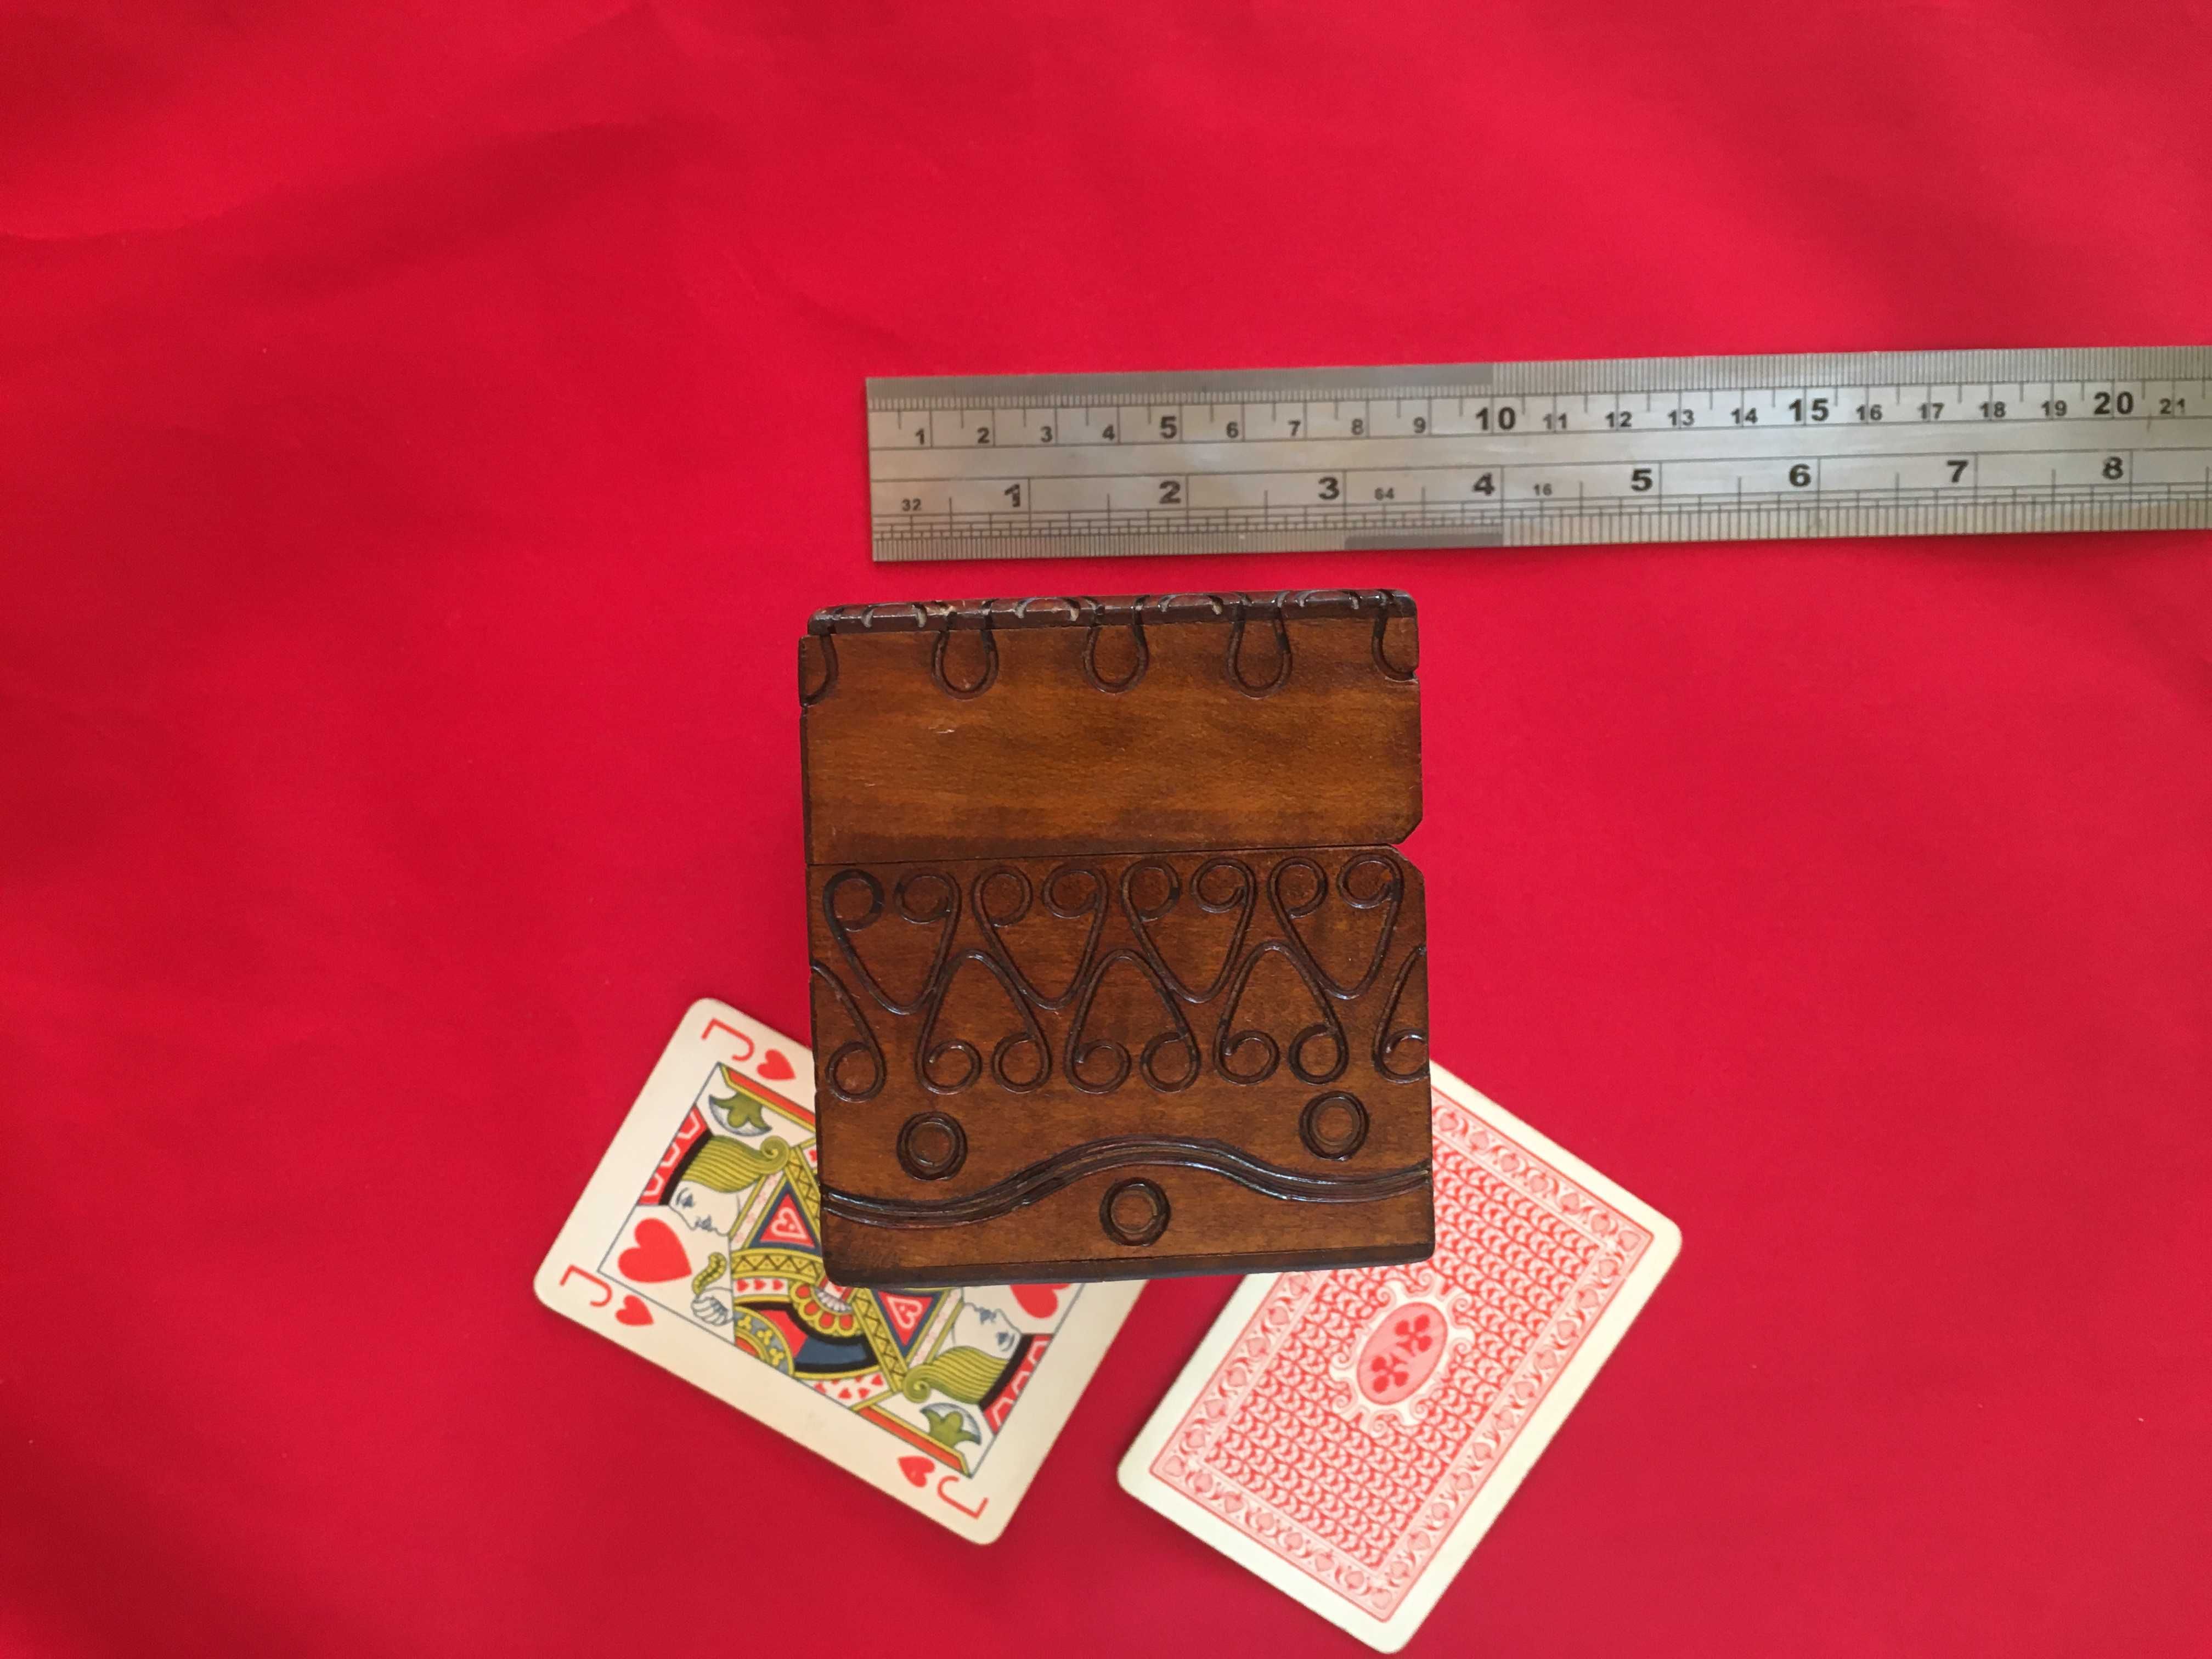 Stare drewniane pudełeczko na dwie talie kart